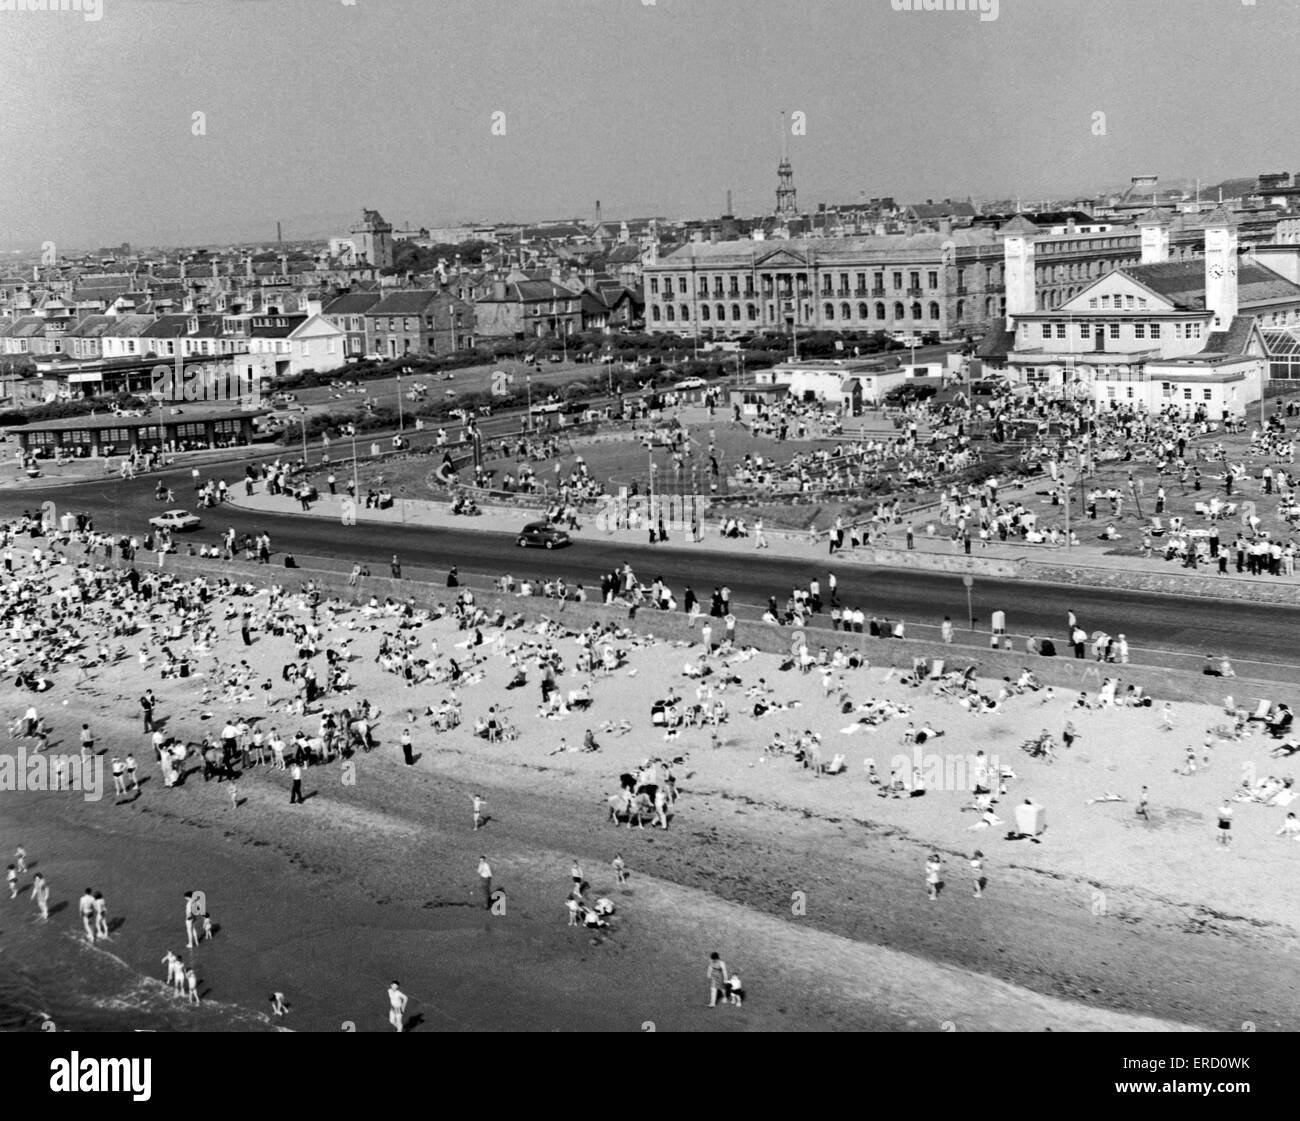 Les gens s'amuser et remplir la côte en été, à la plage d'Ayr en Ecosse. Juin 1970. Banque D'Images